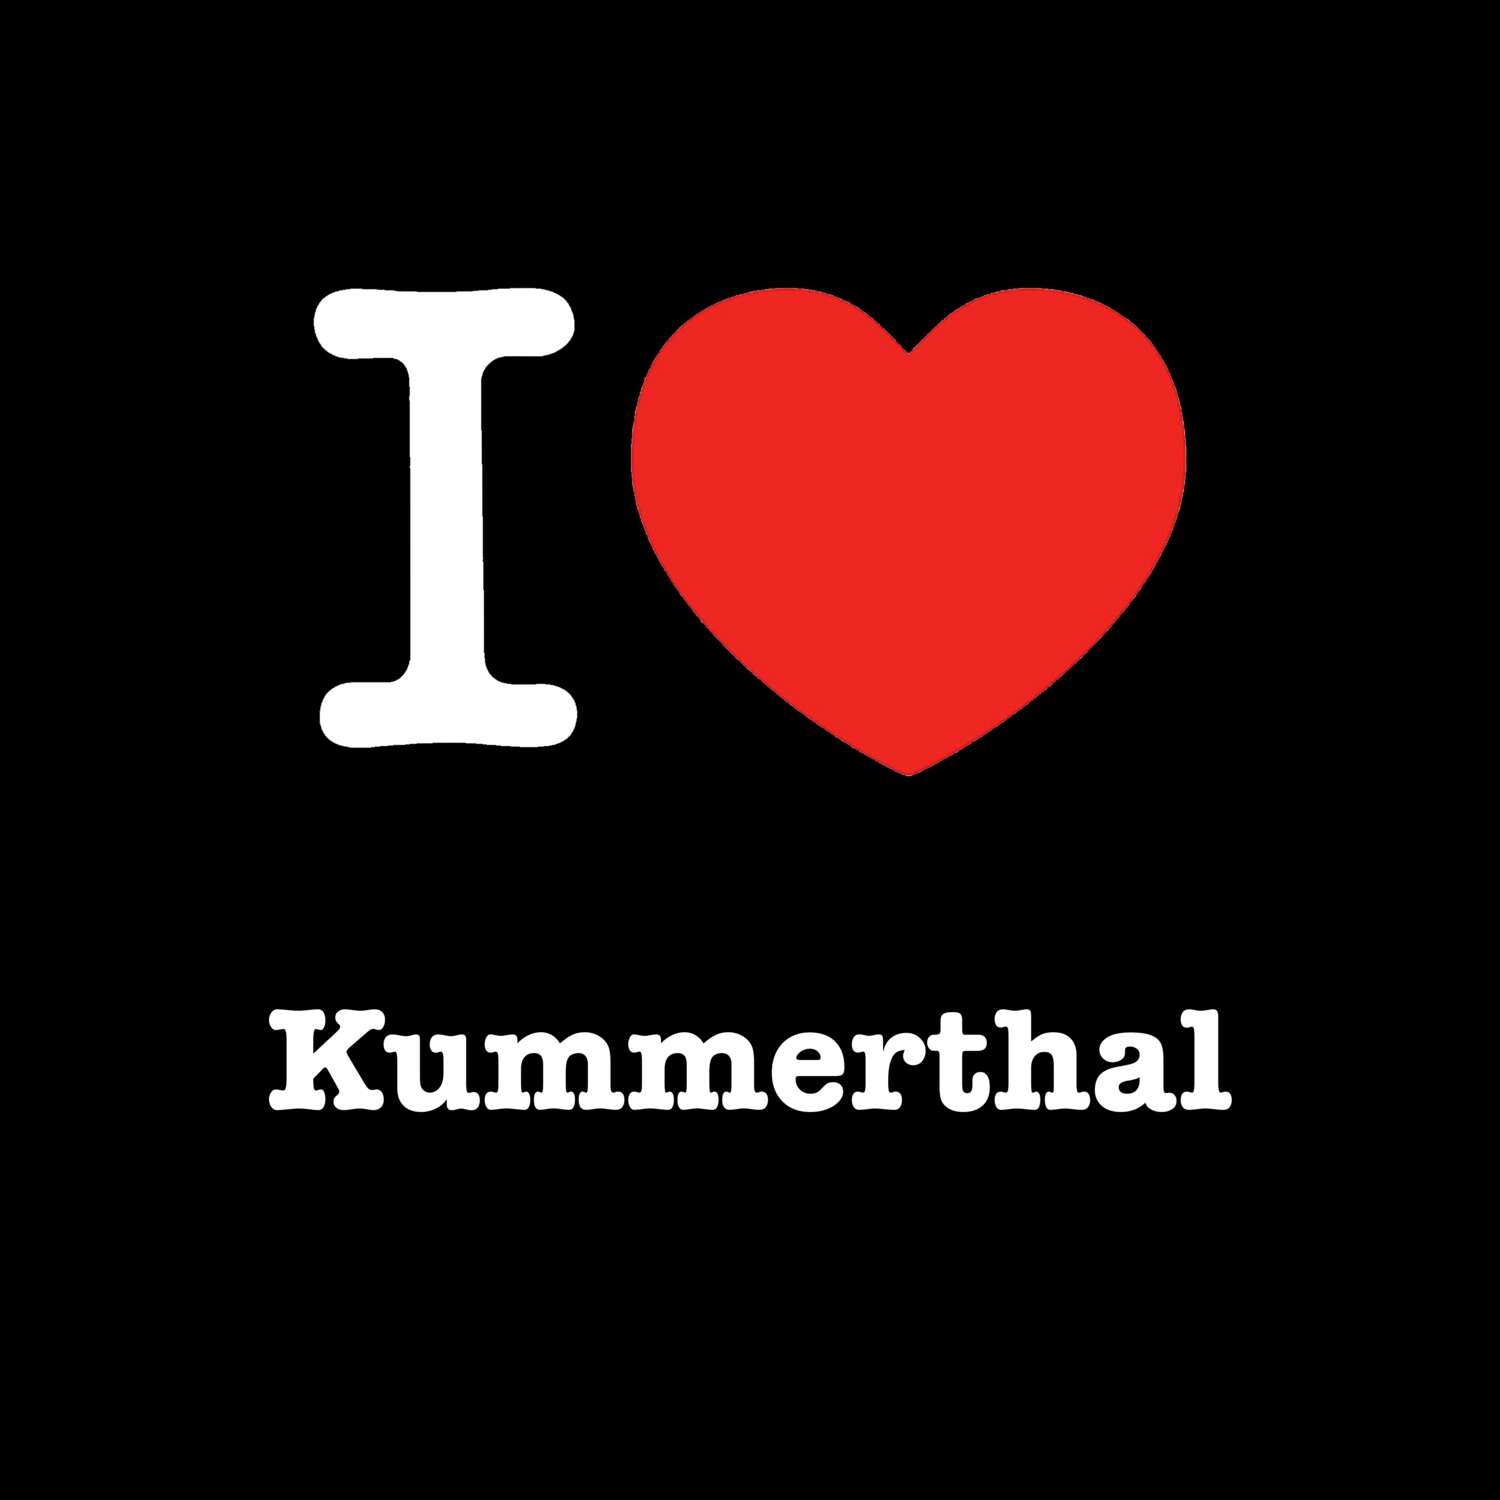 Kummerthal T-Shirt »I love«